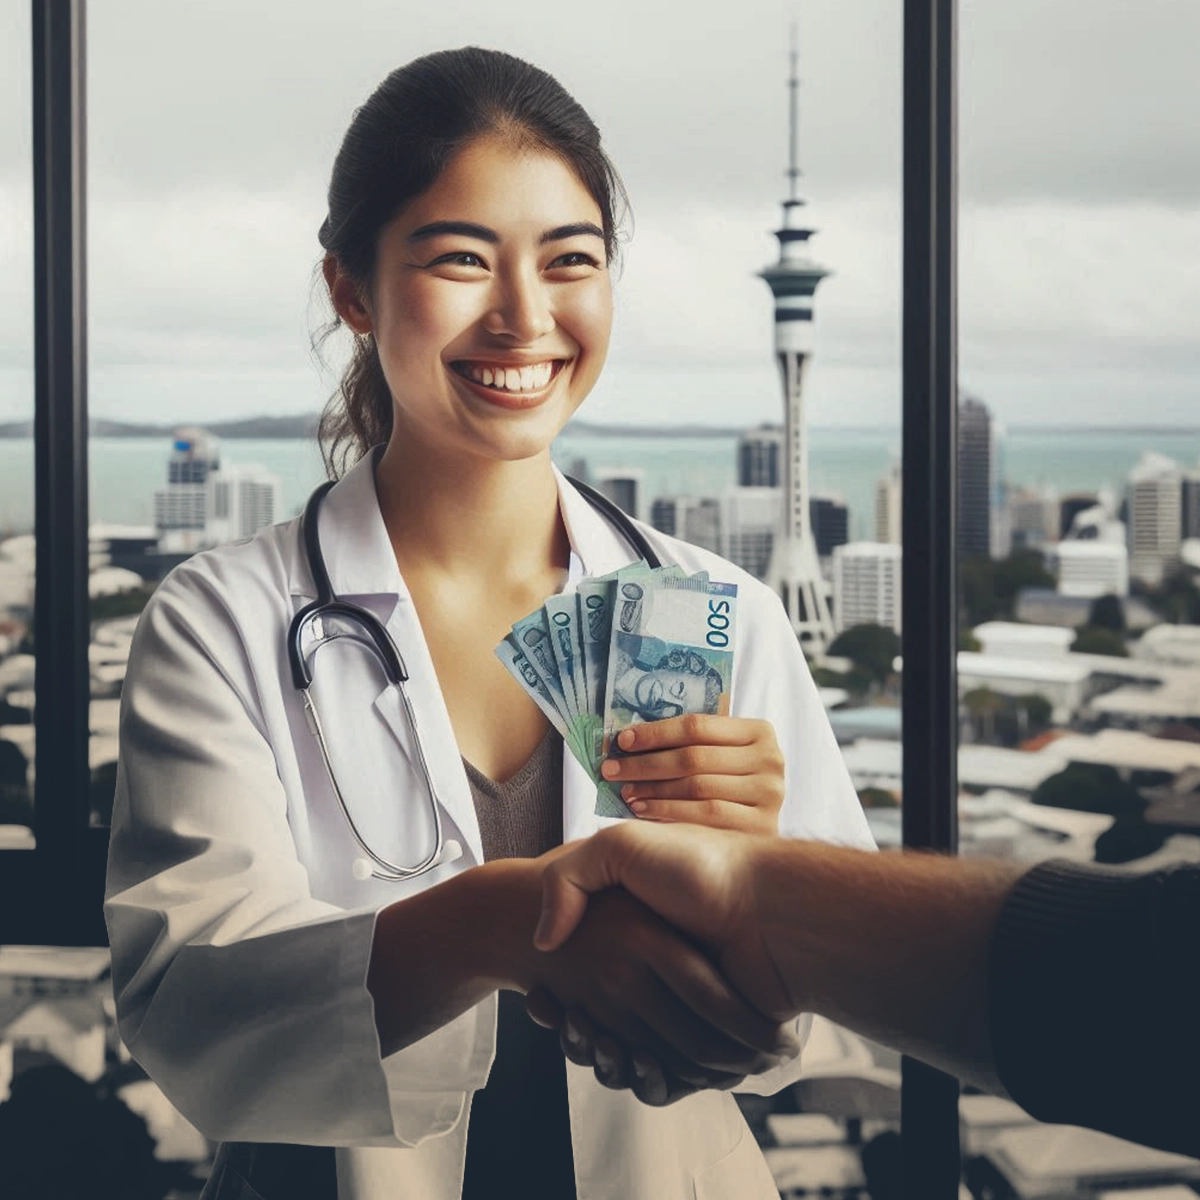 پاداش و مزایای پزشکان در نیوزیلند